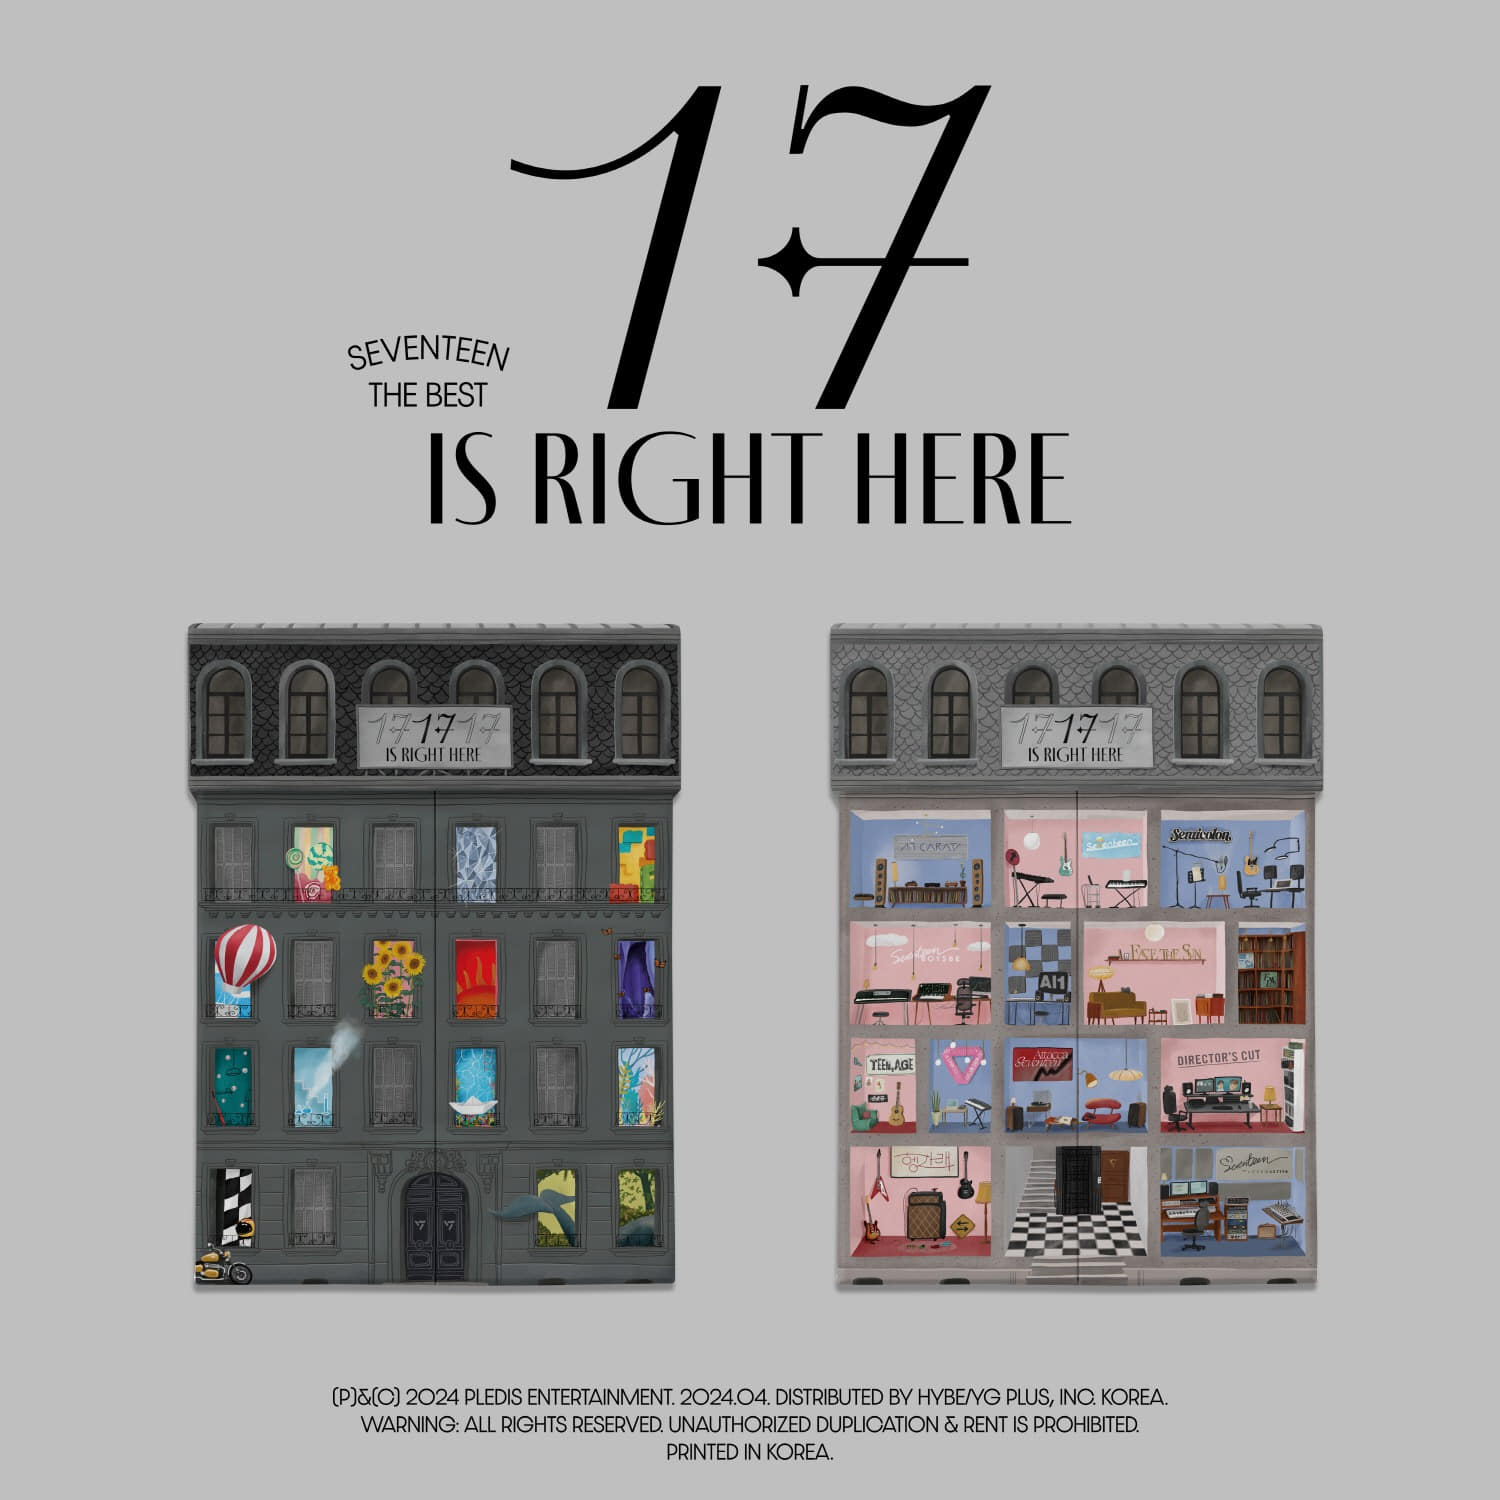 세븐틴 (SEVENTEEN) - SEVENTEEN BEST ALBUM [17 IS RIGHT HERE] (랜덤)